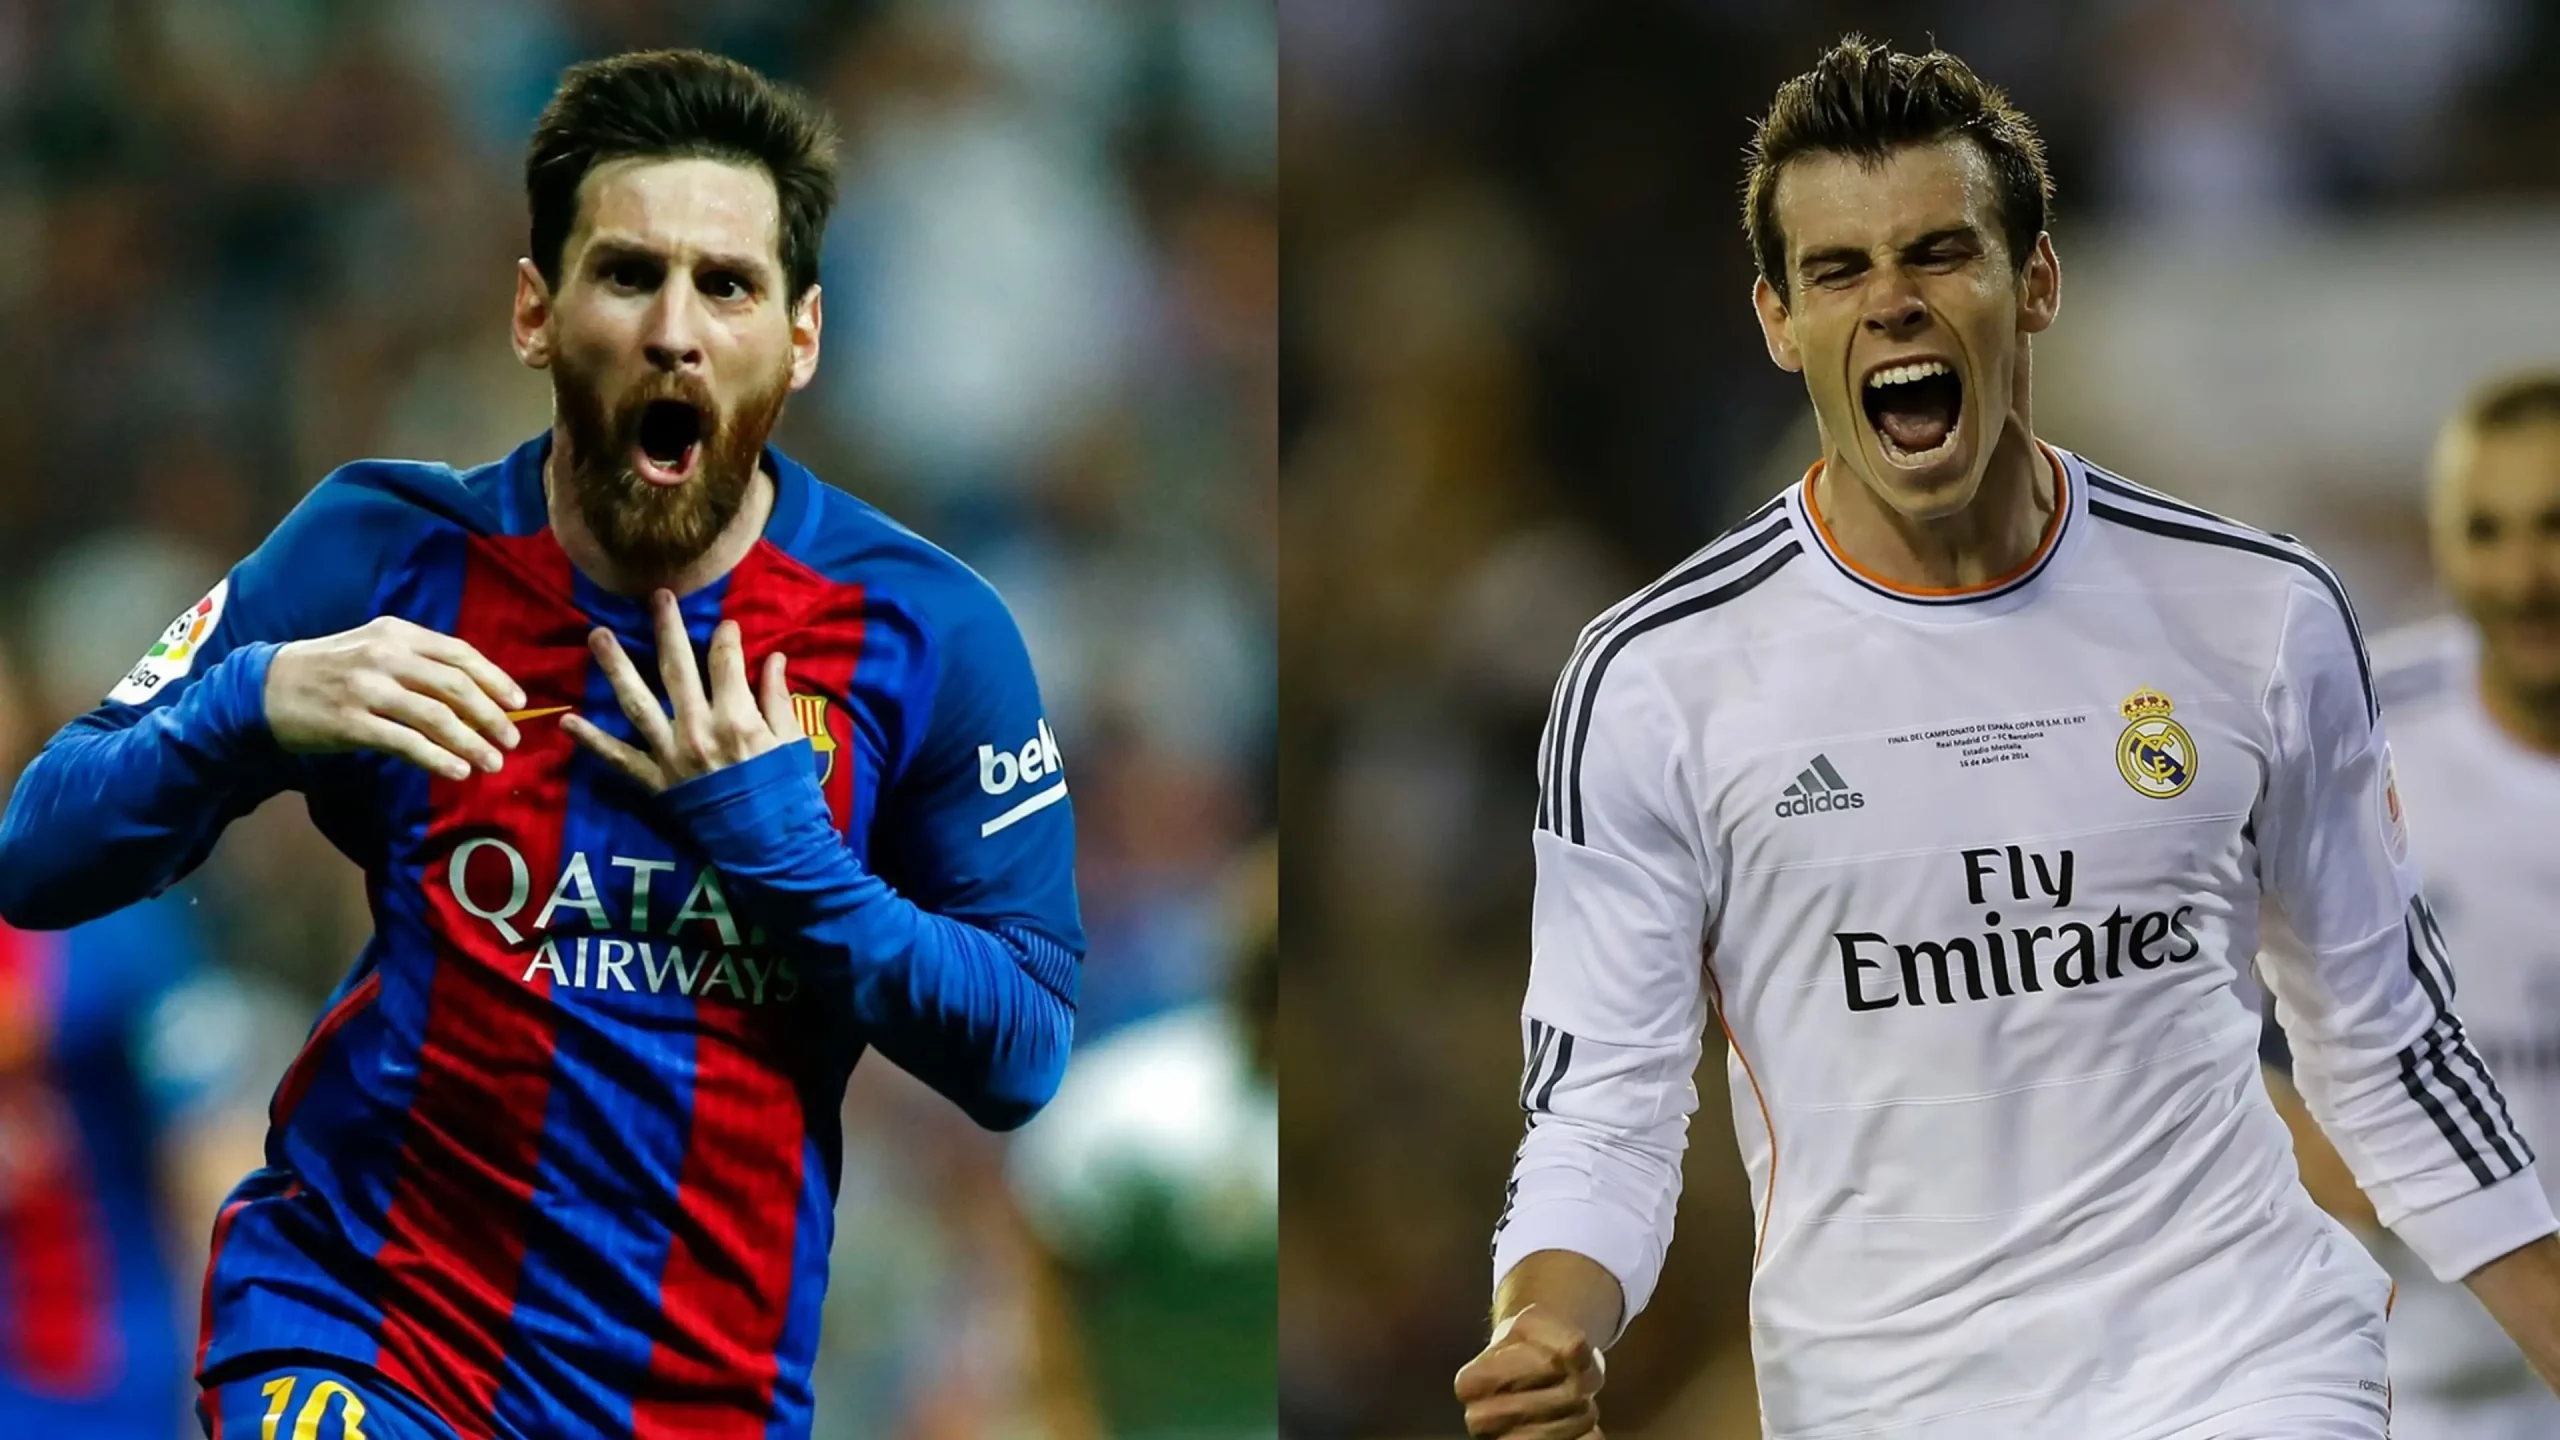 Lionel Messi and Gareth Bale